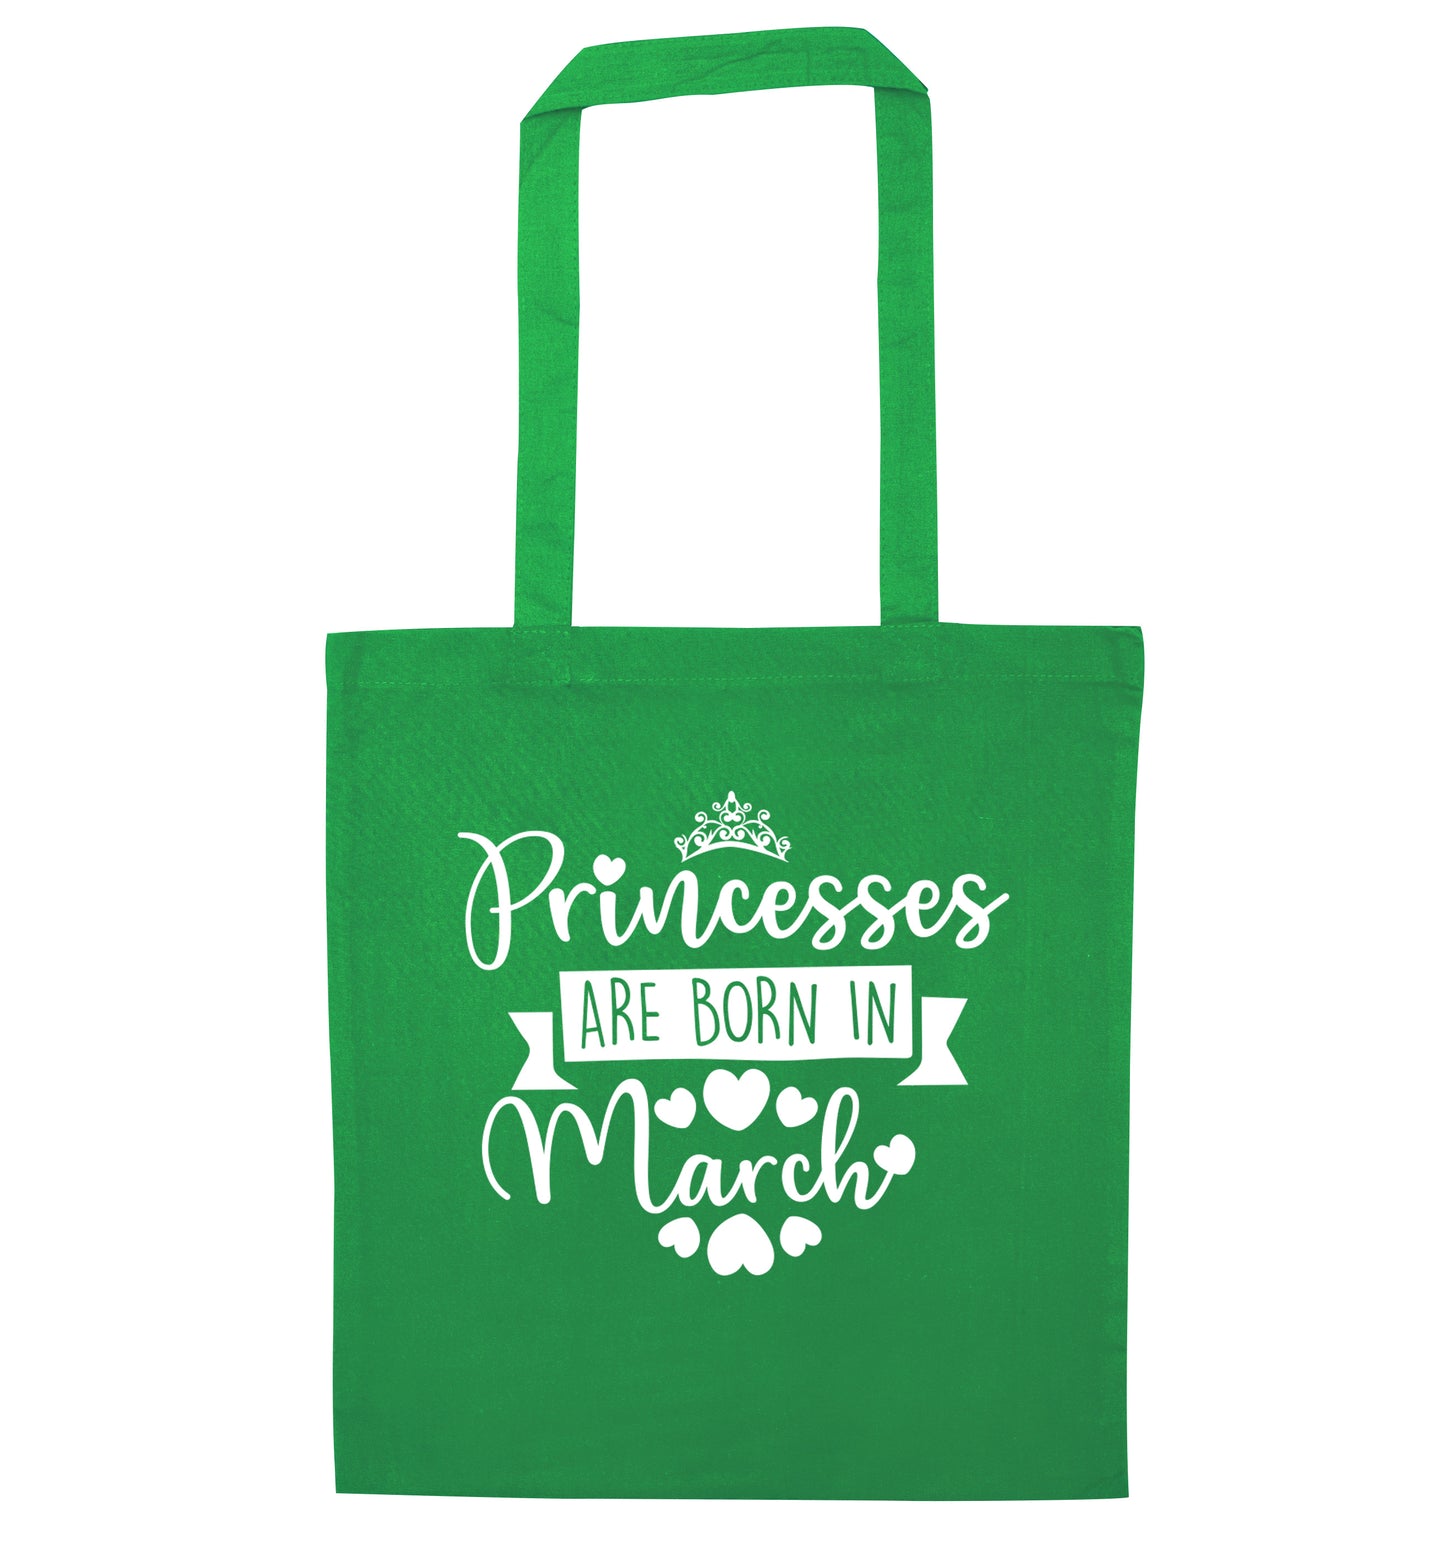 Princesses are born in March green tote bag